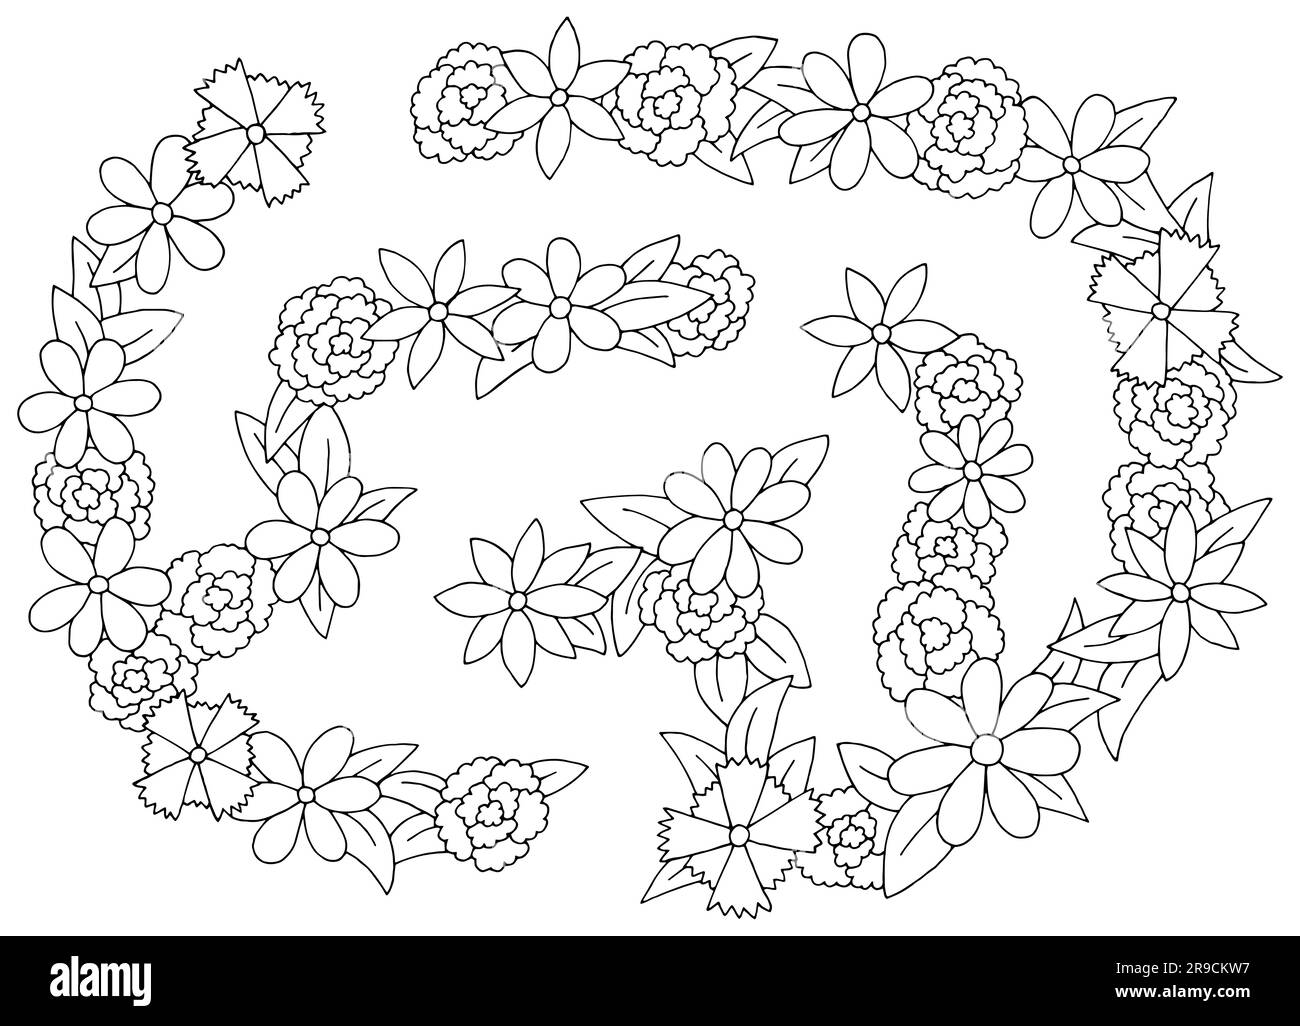 Grafico labirinto di fiori, schizzo bianco e nero, vettore di illustrazione della vista aerea superiore Illustrazione Vettoriale